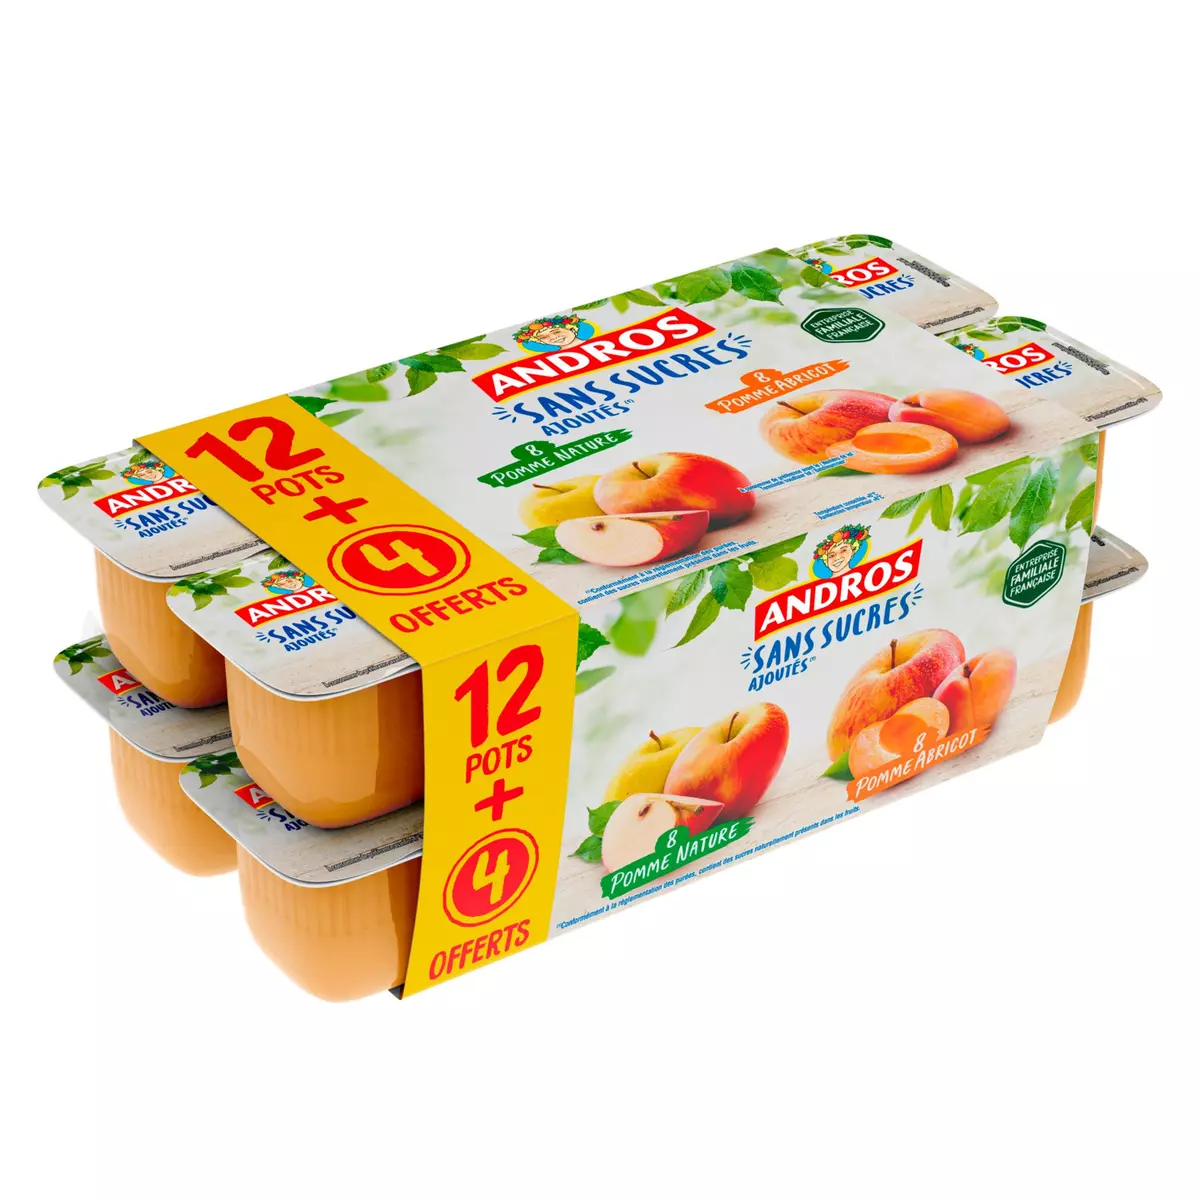 ANDROS Spécialité pomme nature et pomme abricot sans sucres ajoutés 12+4 offertes 16x100g